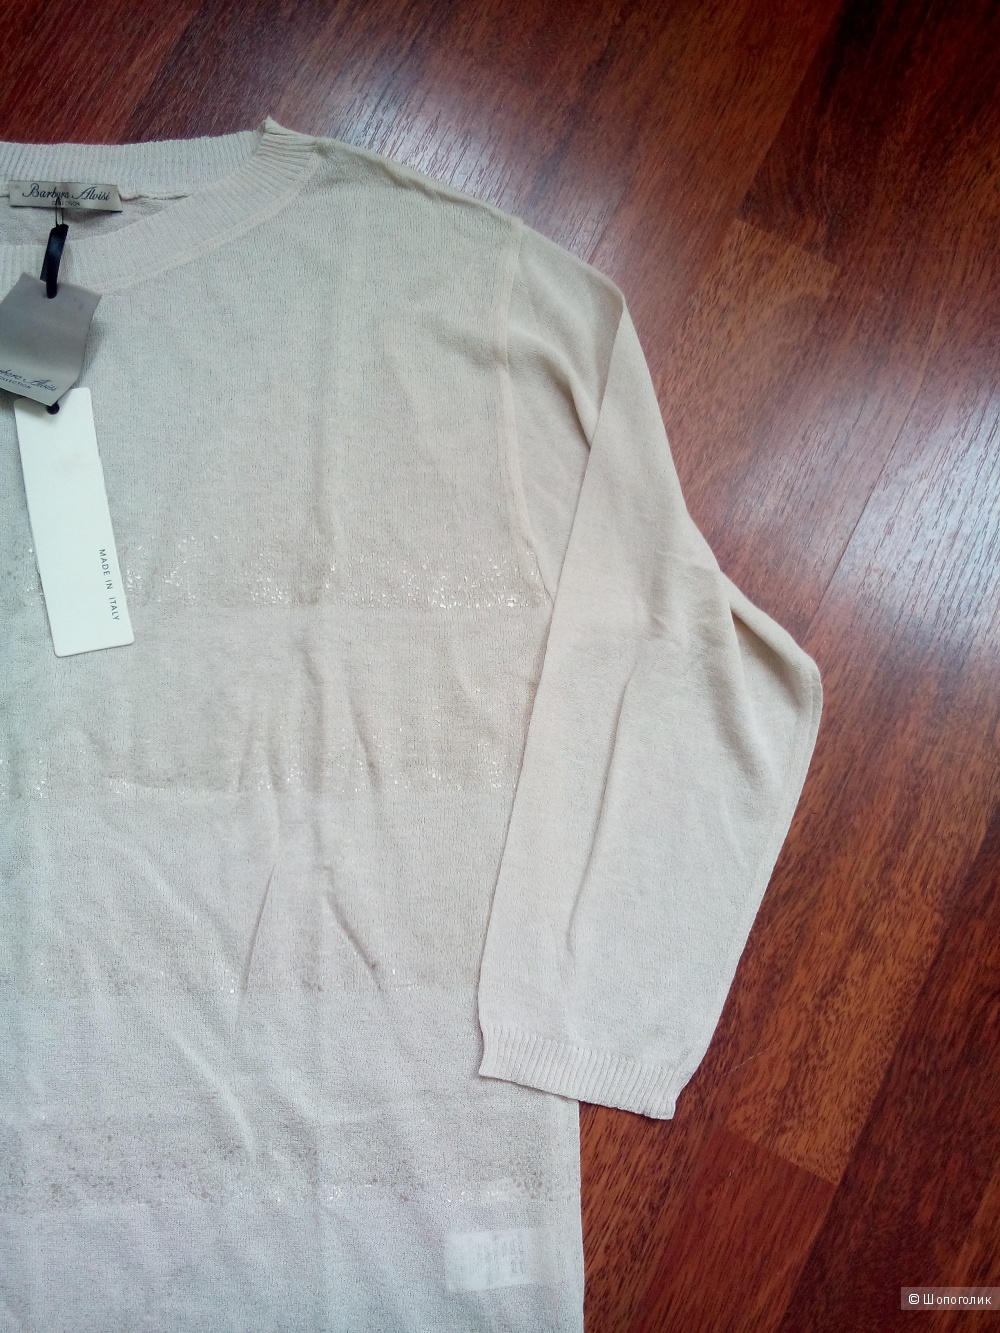 Пуловер-блузка рукав 3\4 BARBARA ALVISI Италия в размере M(44-48) кремового цвета.